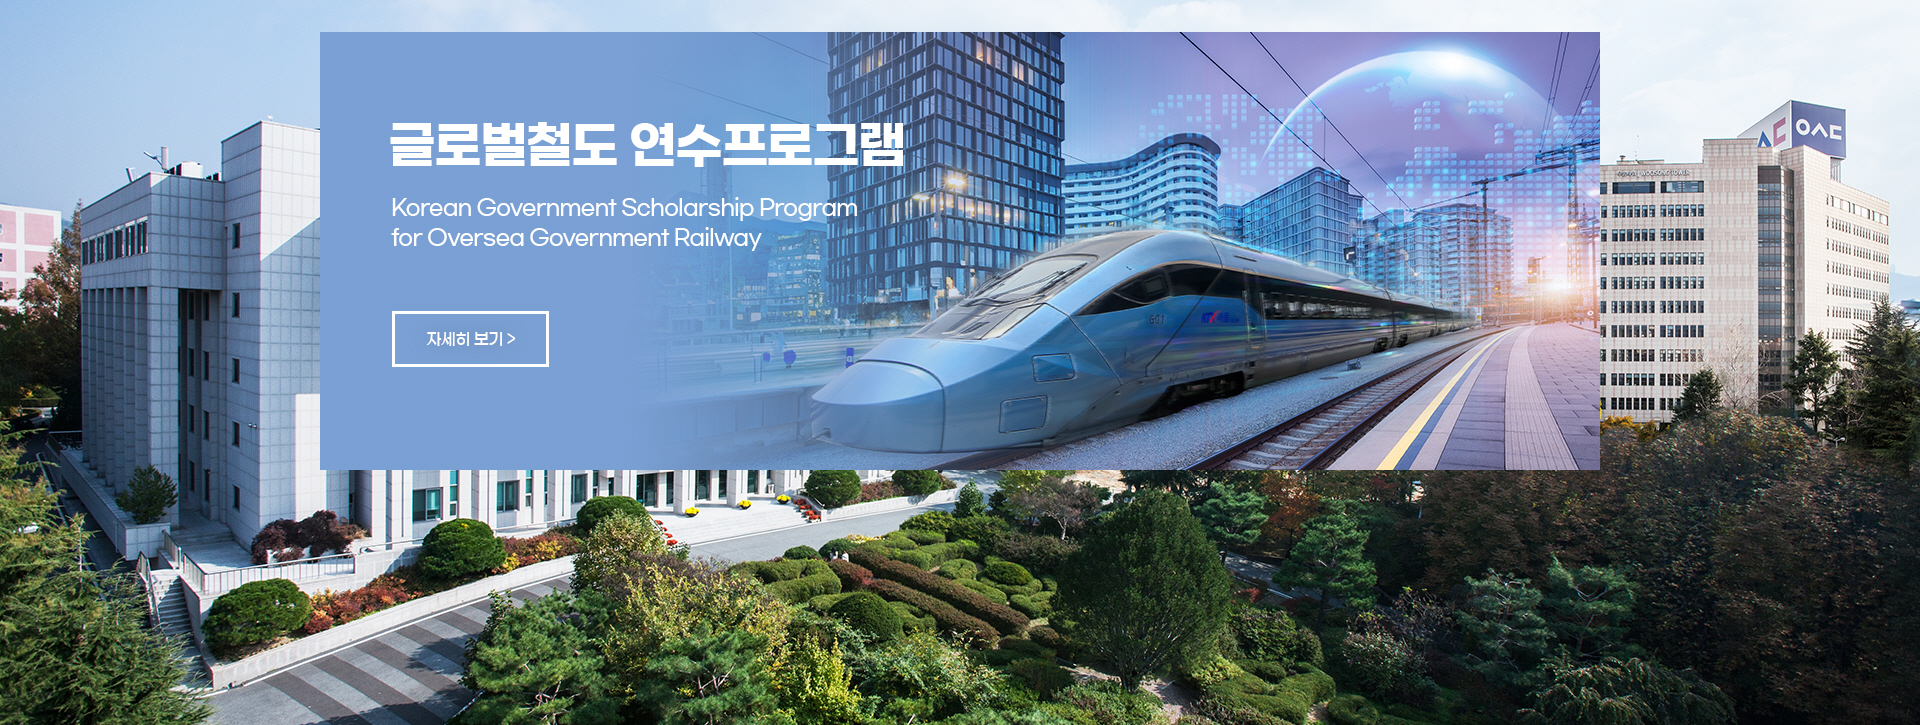 글로벌철도 연수프로그램